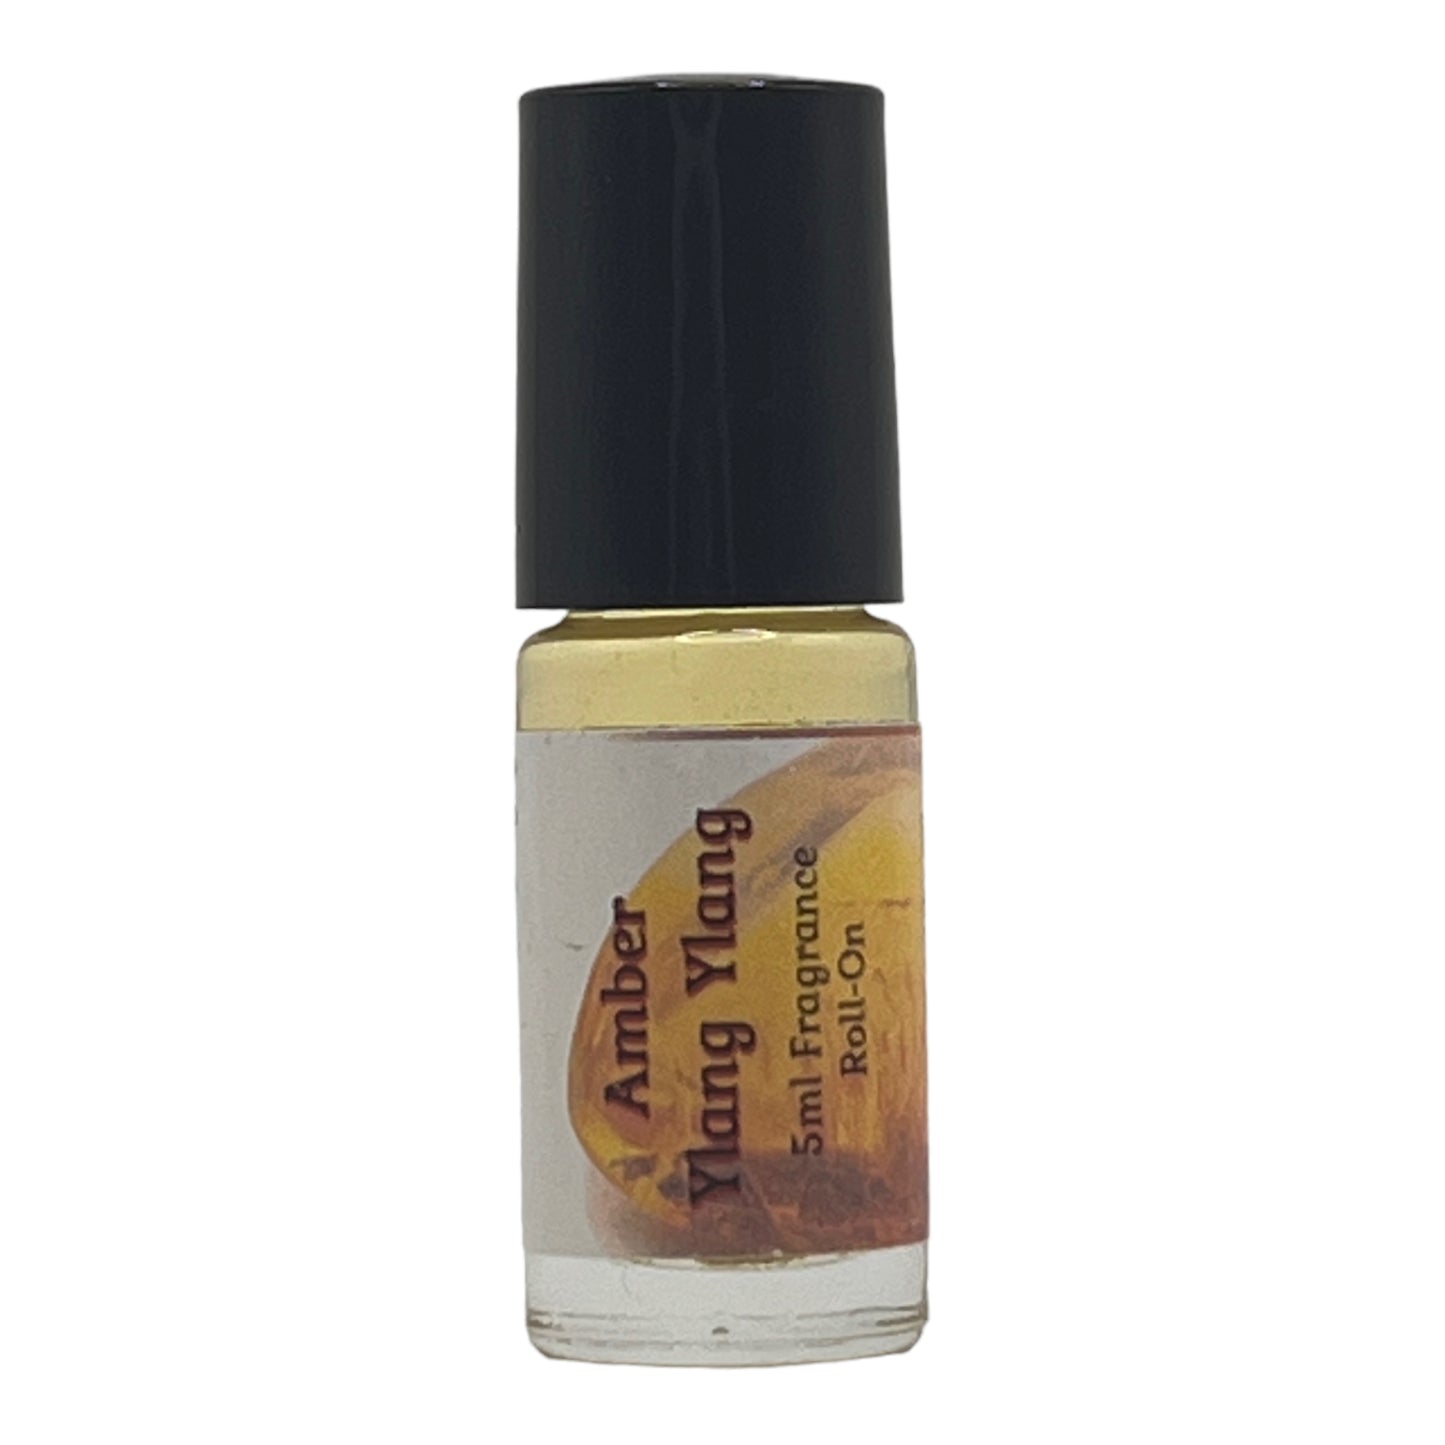 Amber Ylang Ylang Perfume Oil Fragrance Roll On